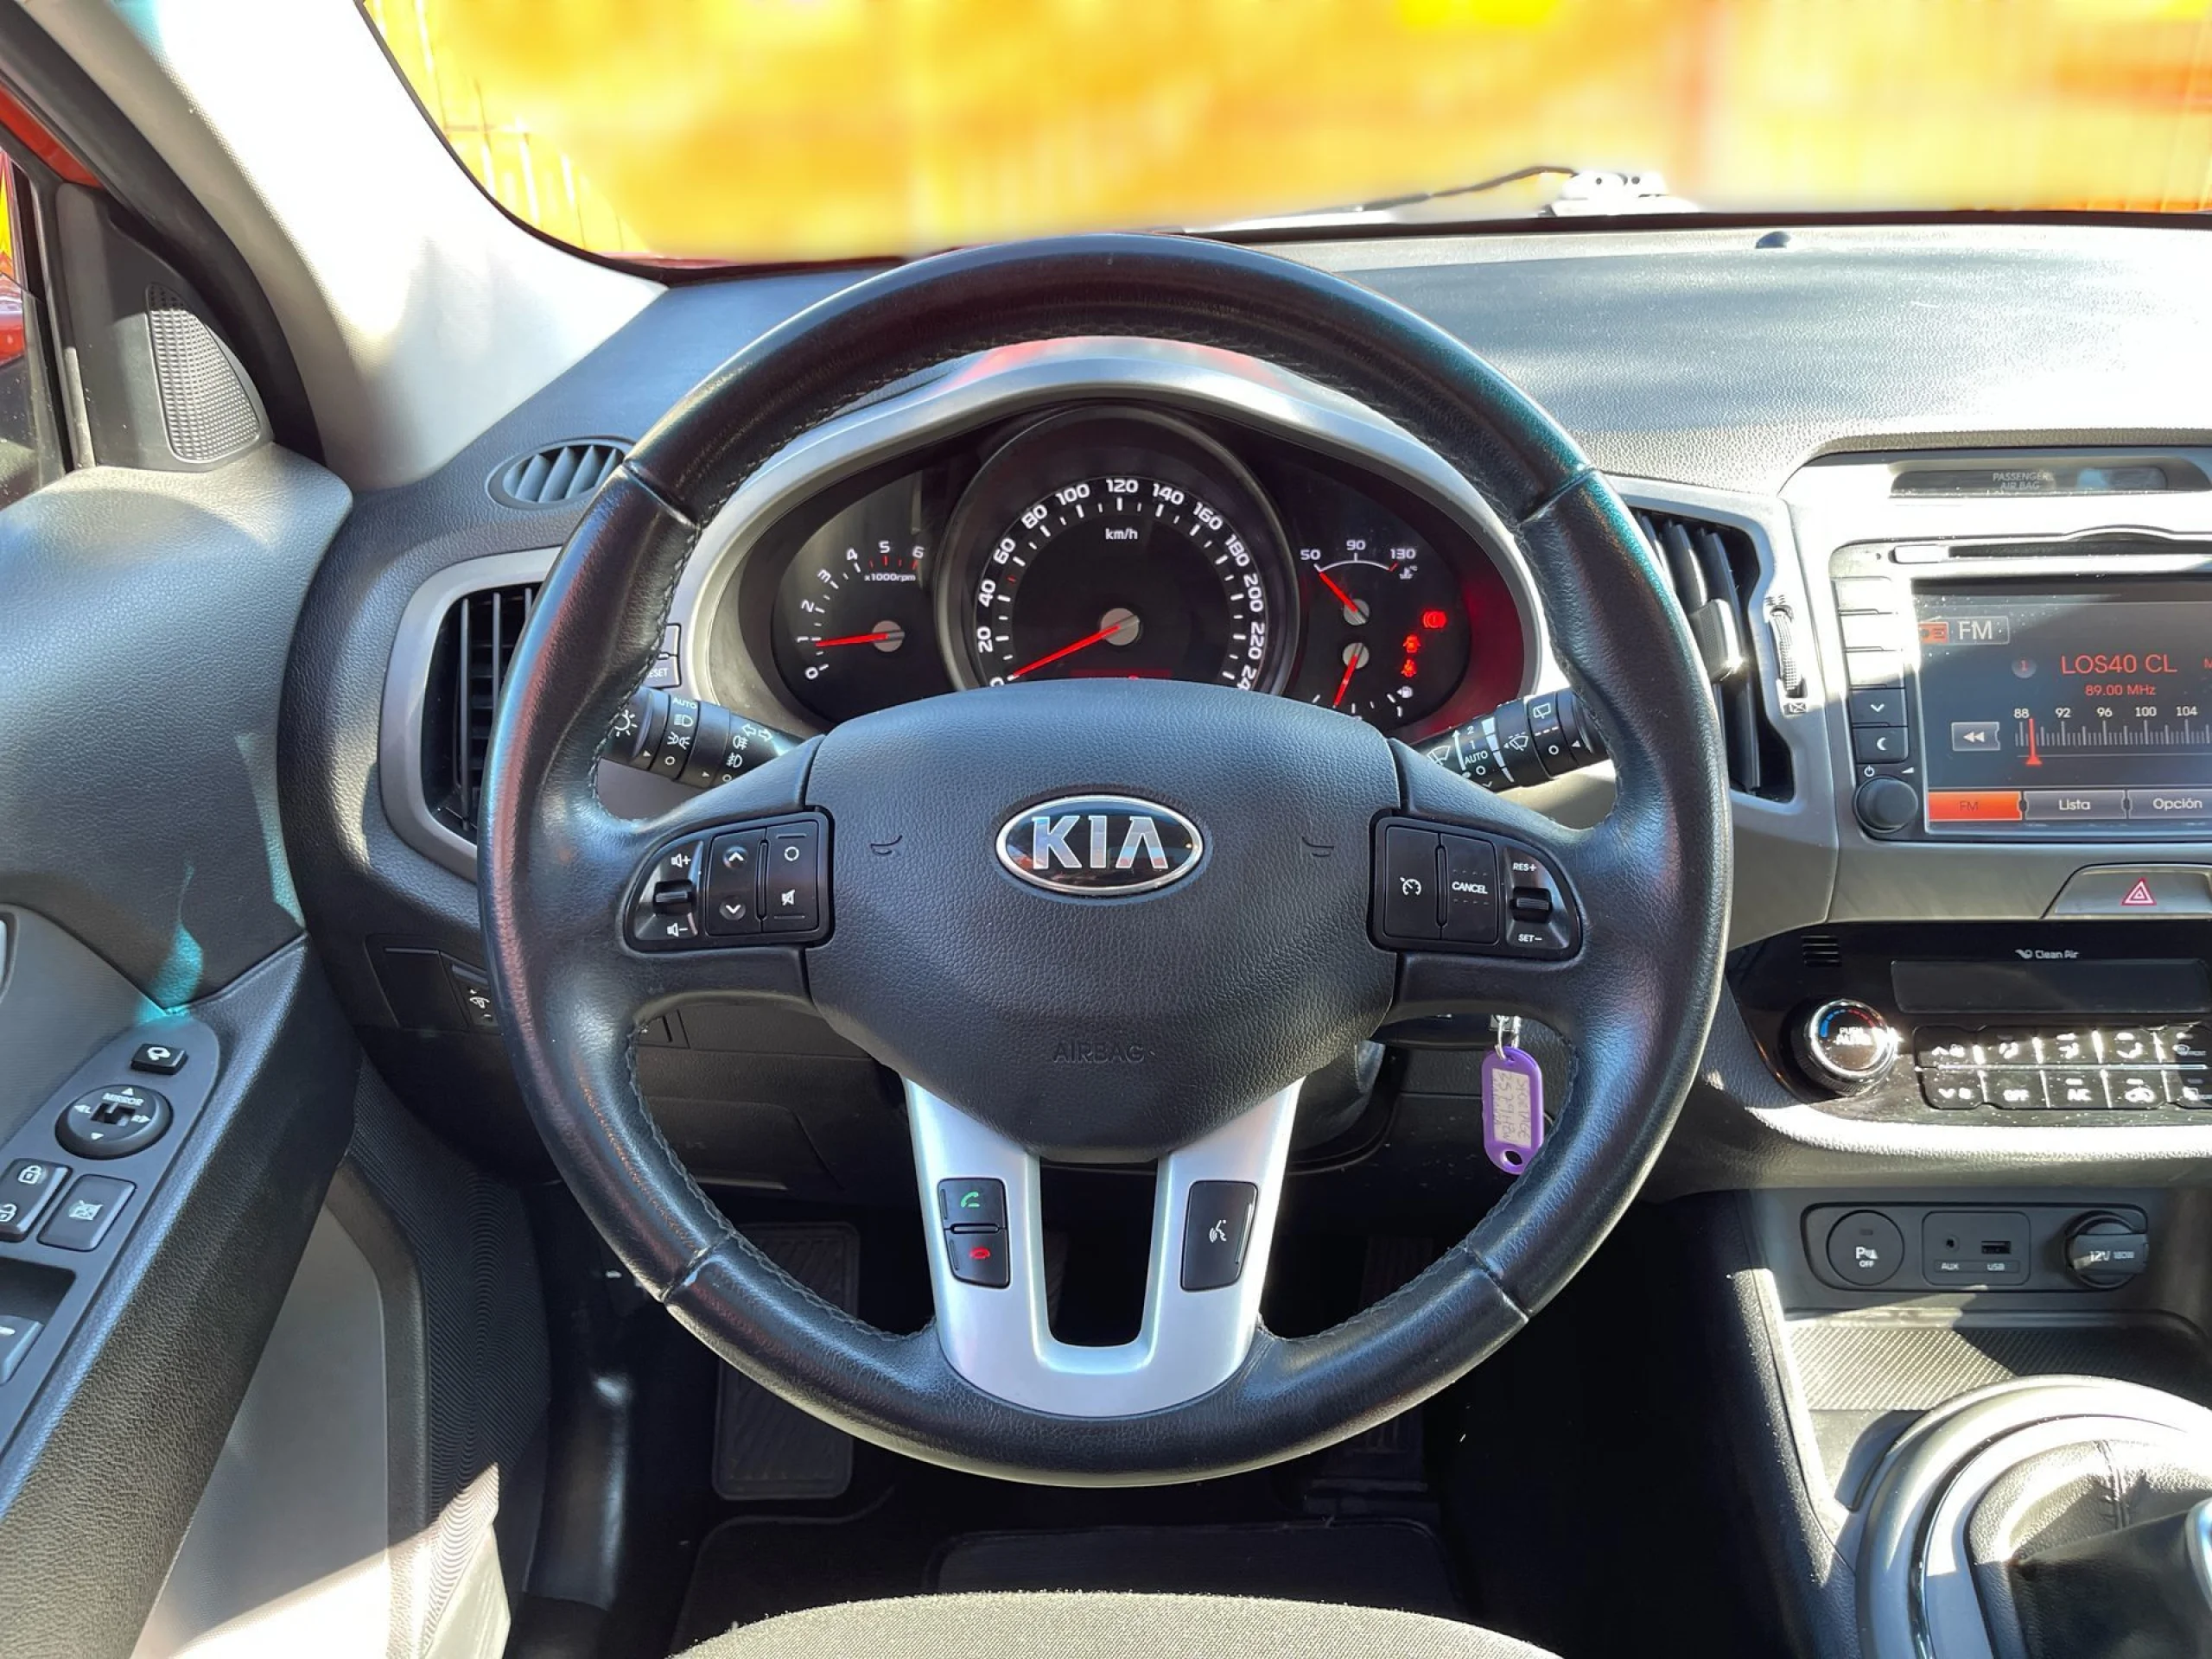 Kia Sportage 2.0 CRDI Drive 4x2 100 kW (136 CV) - Foto 10